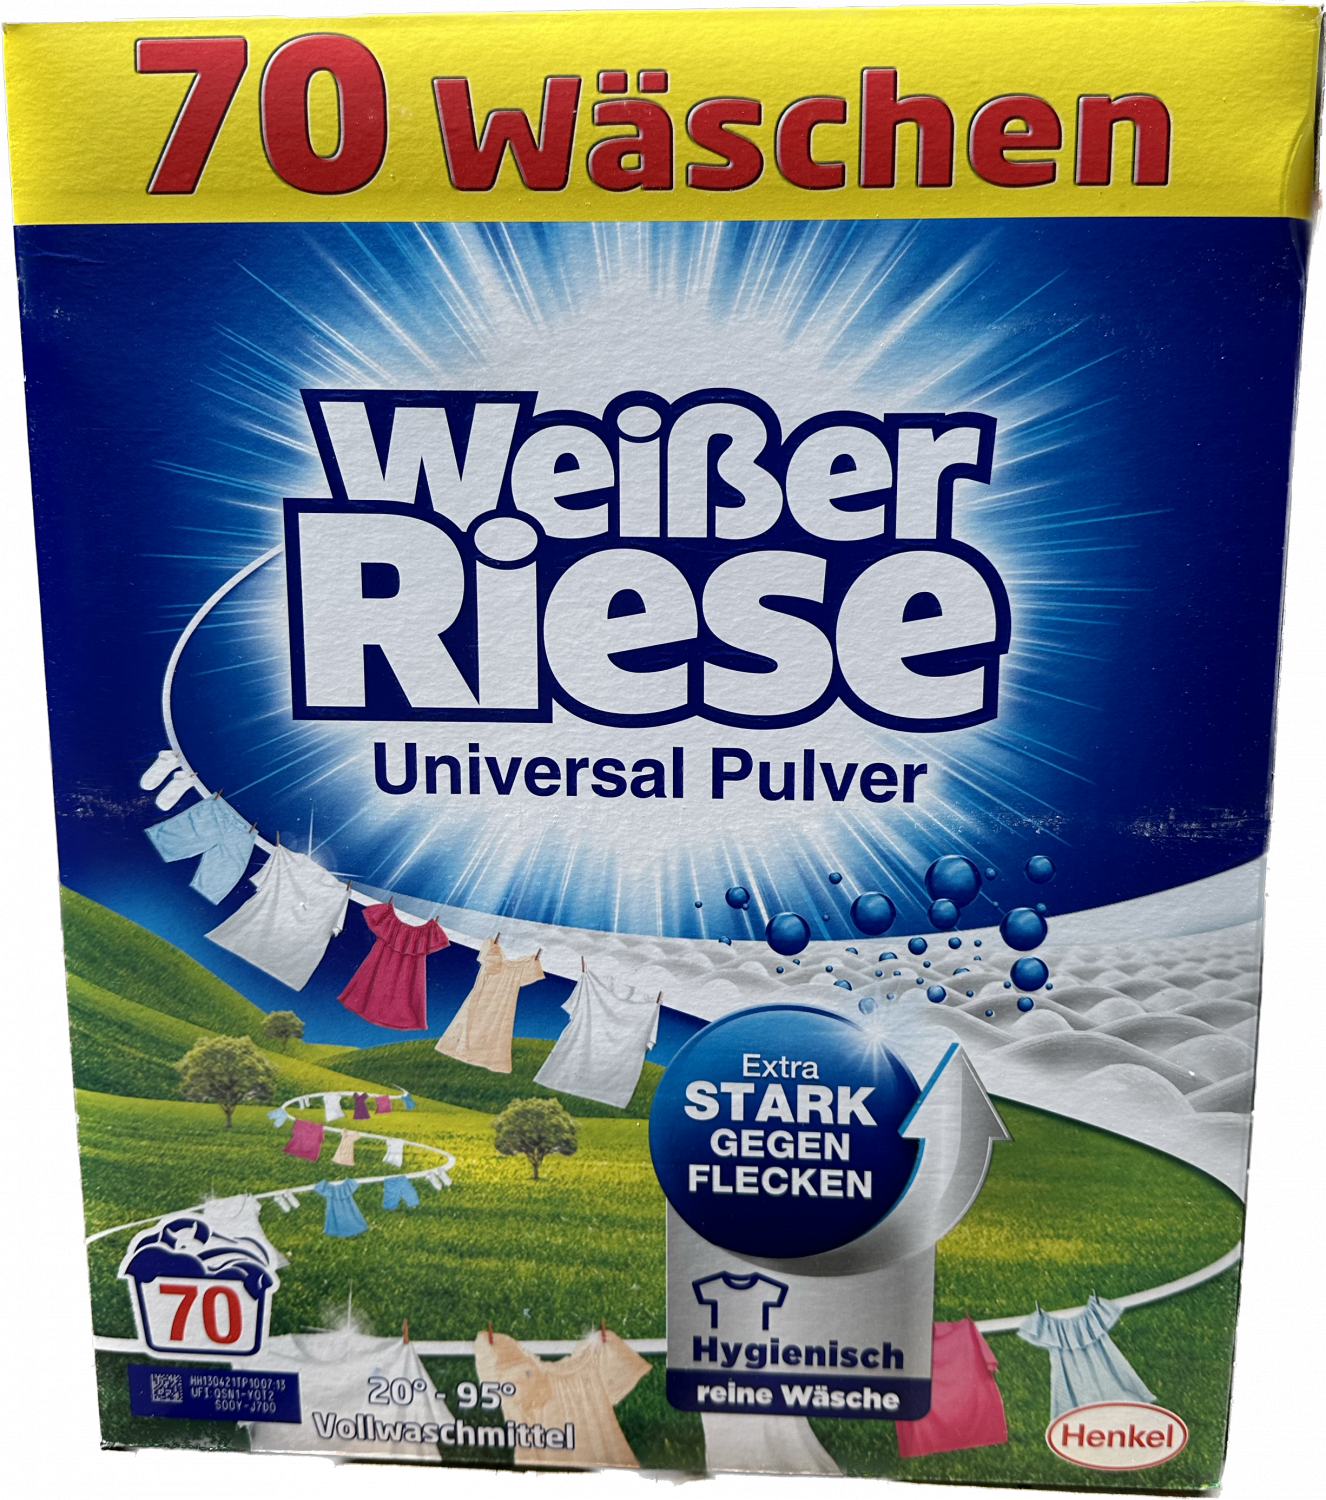 Weisser riese prášek parfémy, dáveki 70 Německo Drogerie, : 3,85kg dovoz produkty pracích BIO univerzální